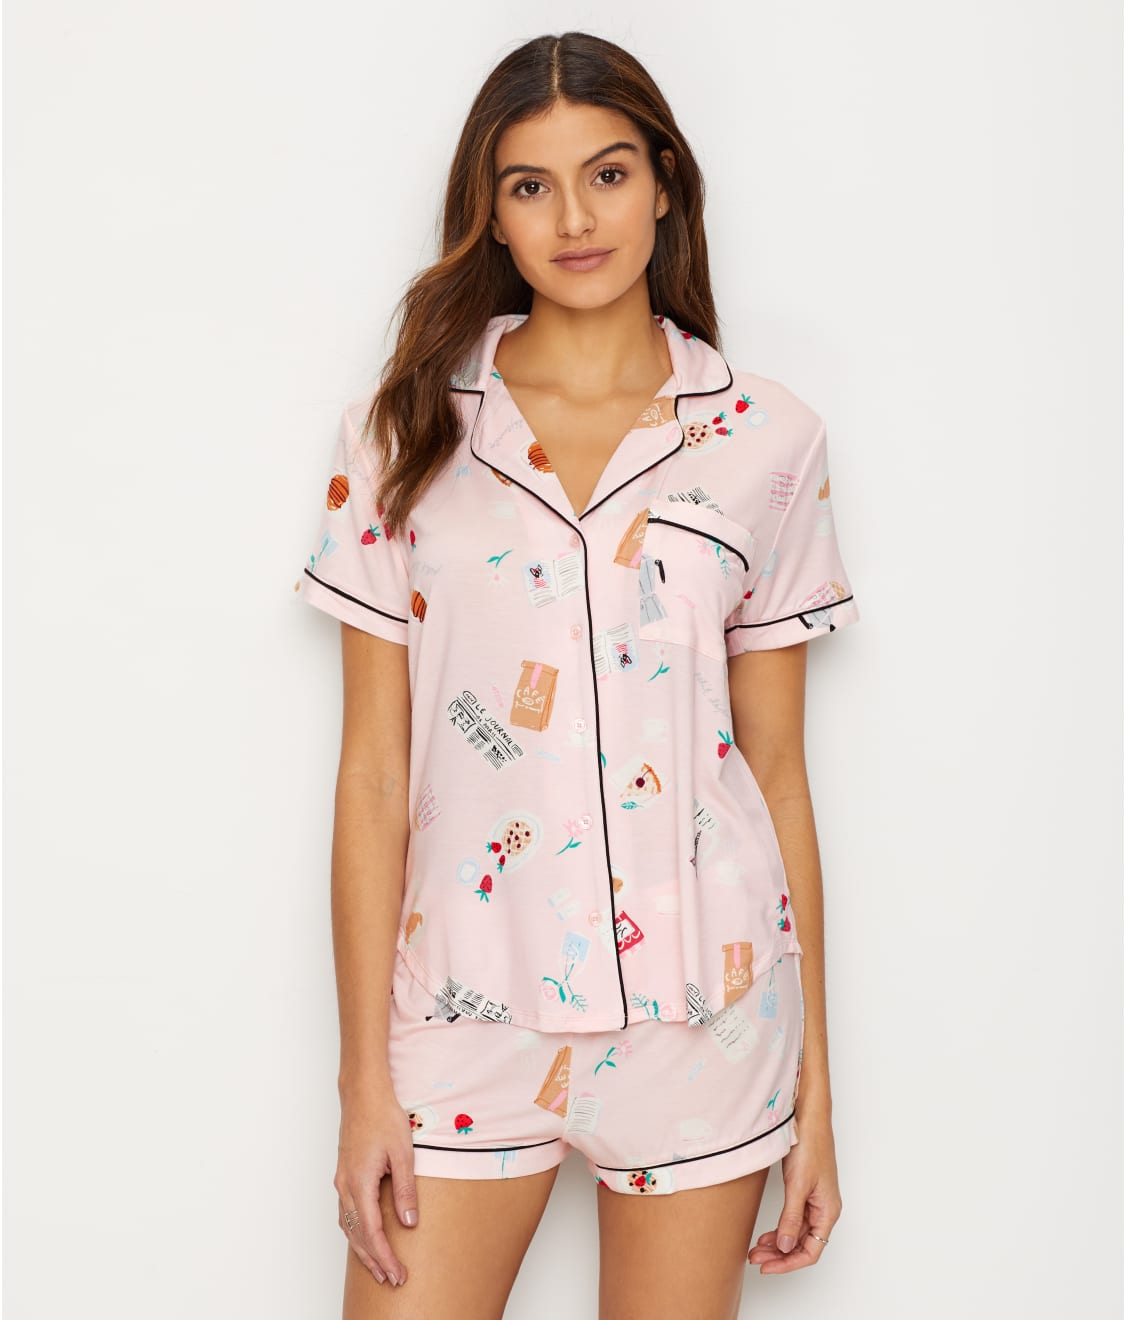 kate spade new york Parisian Modal Pajama Set & Reviews | Bare ...